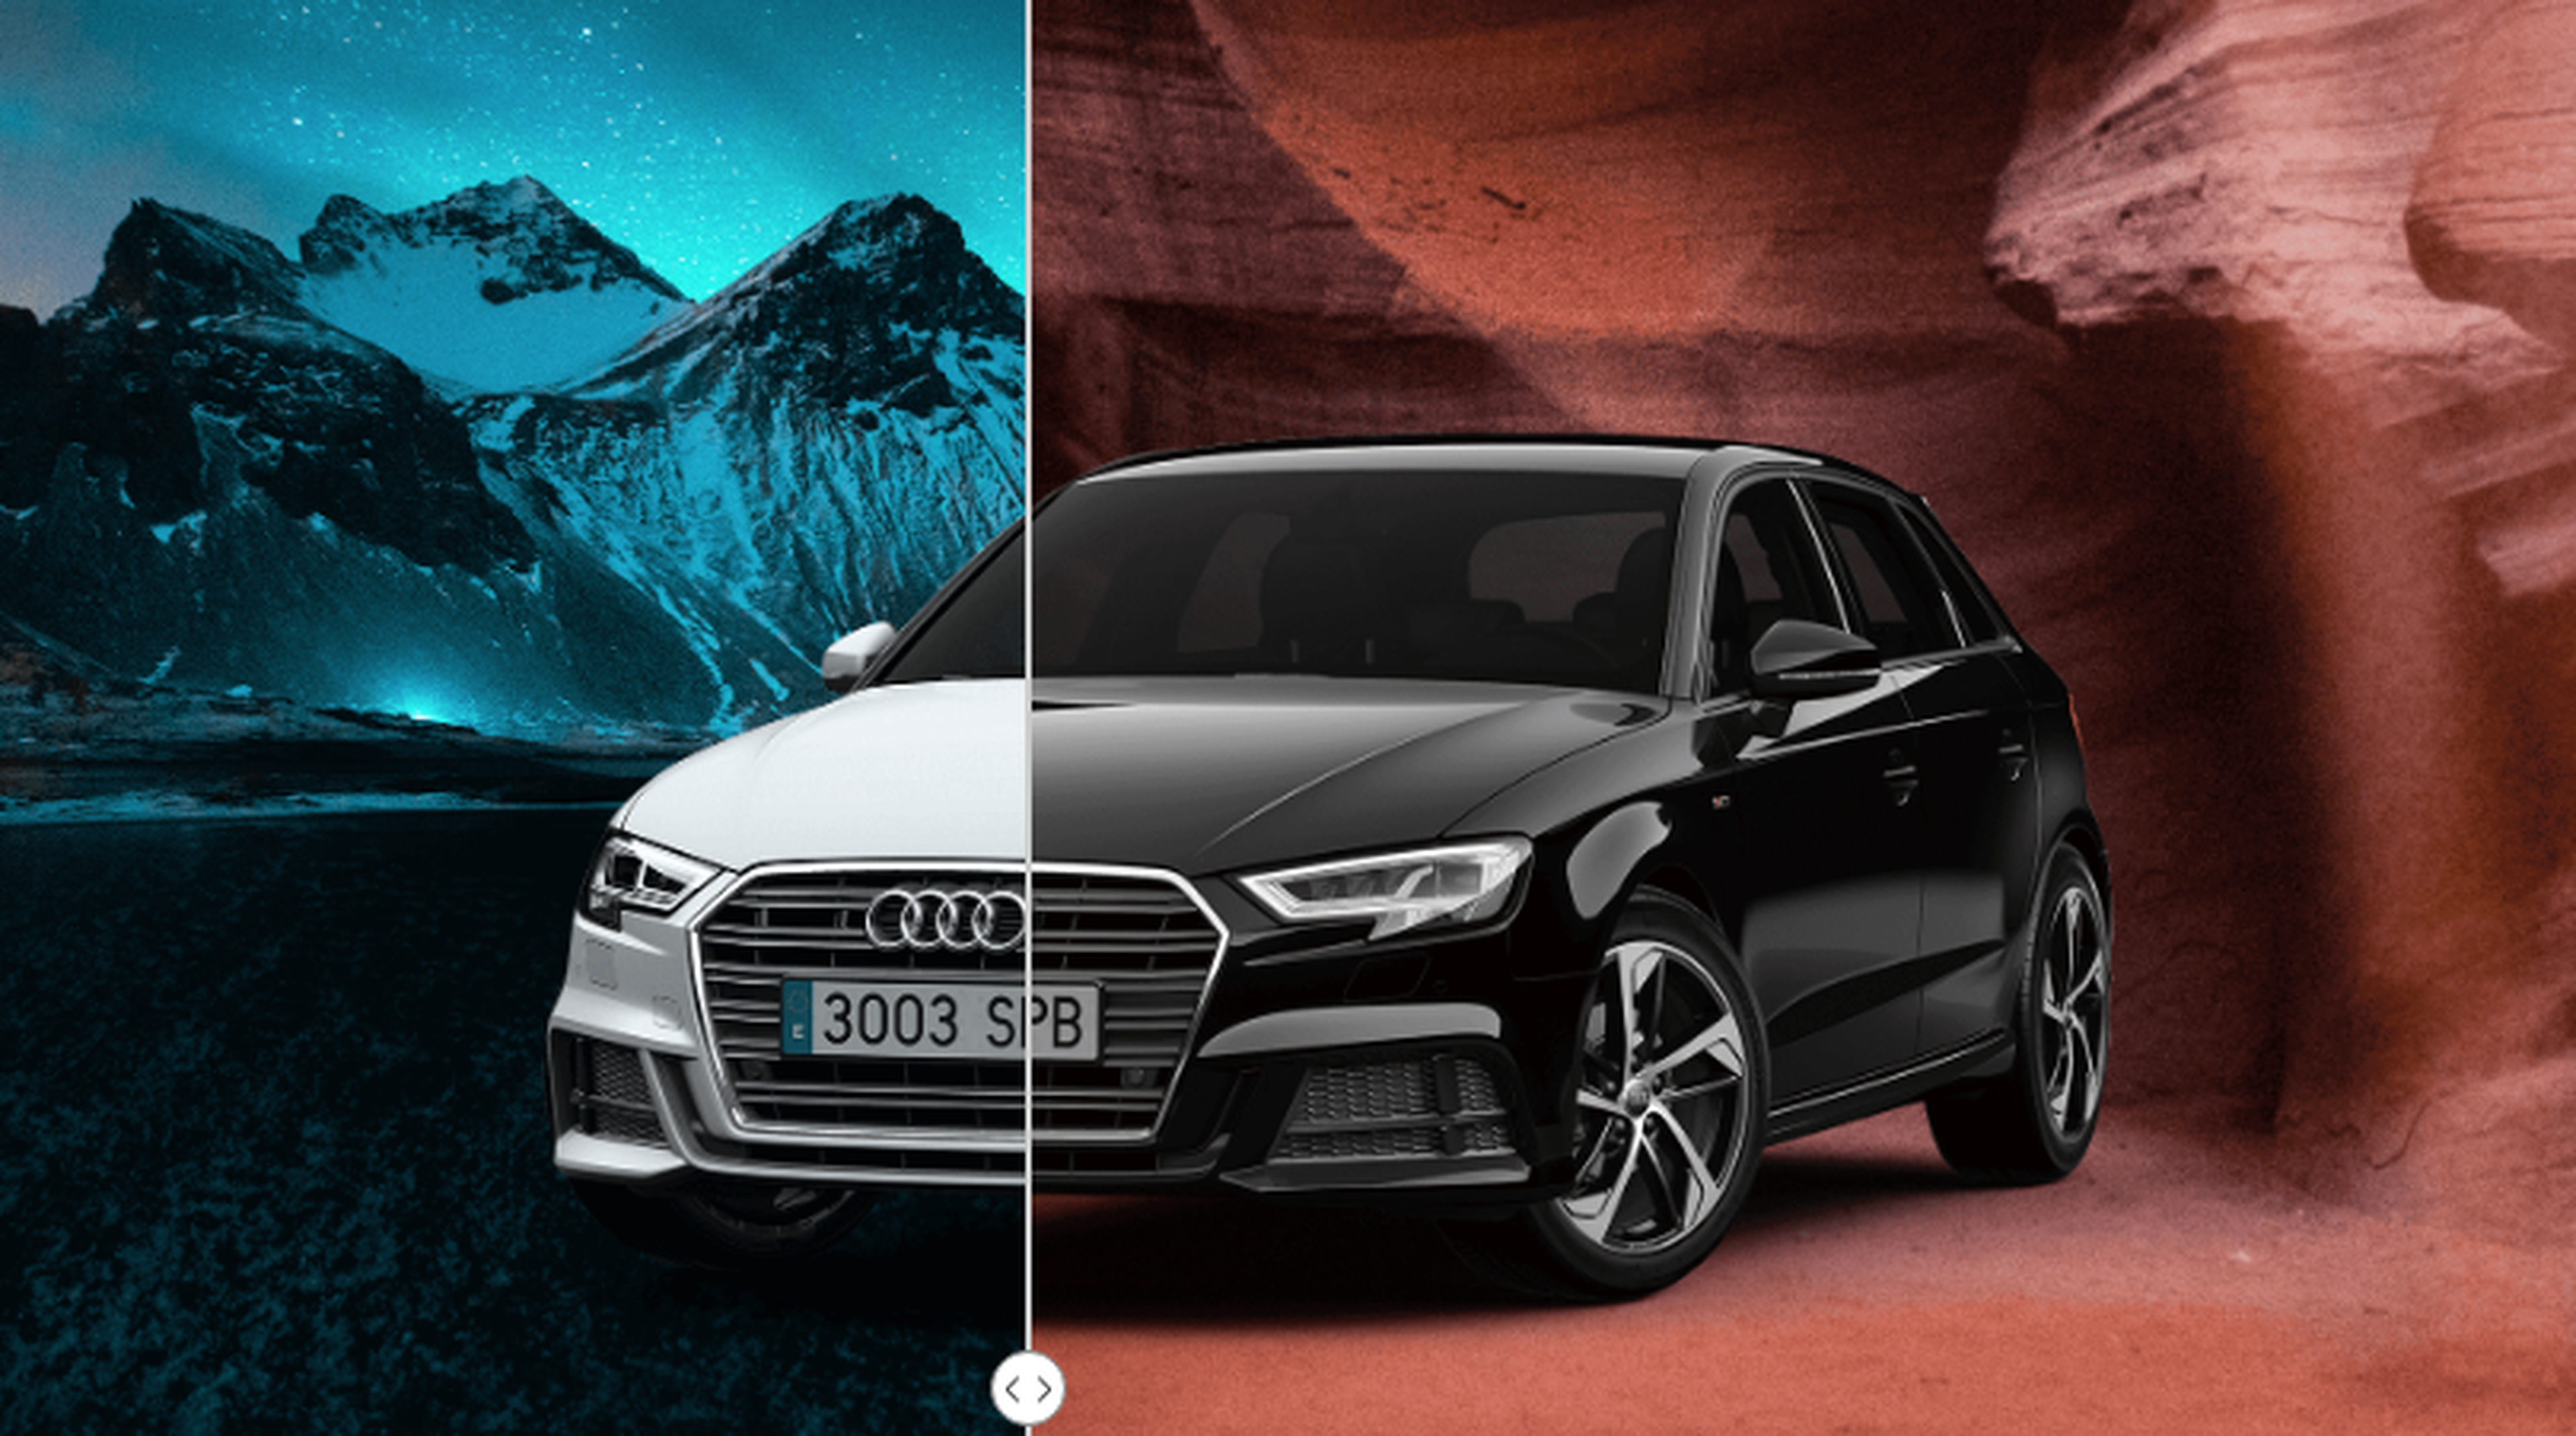 Con Audi Renting puedes comprar un Sportback ALL-IN por 195 euros al mes